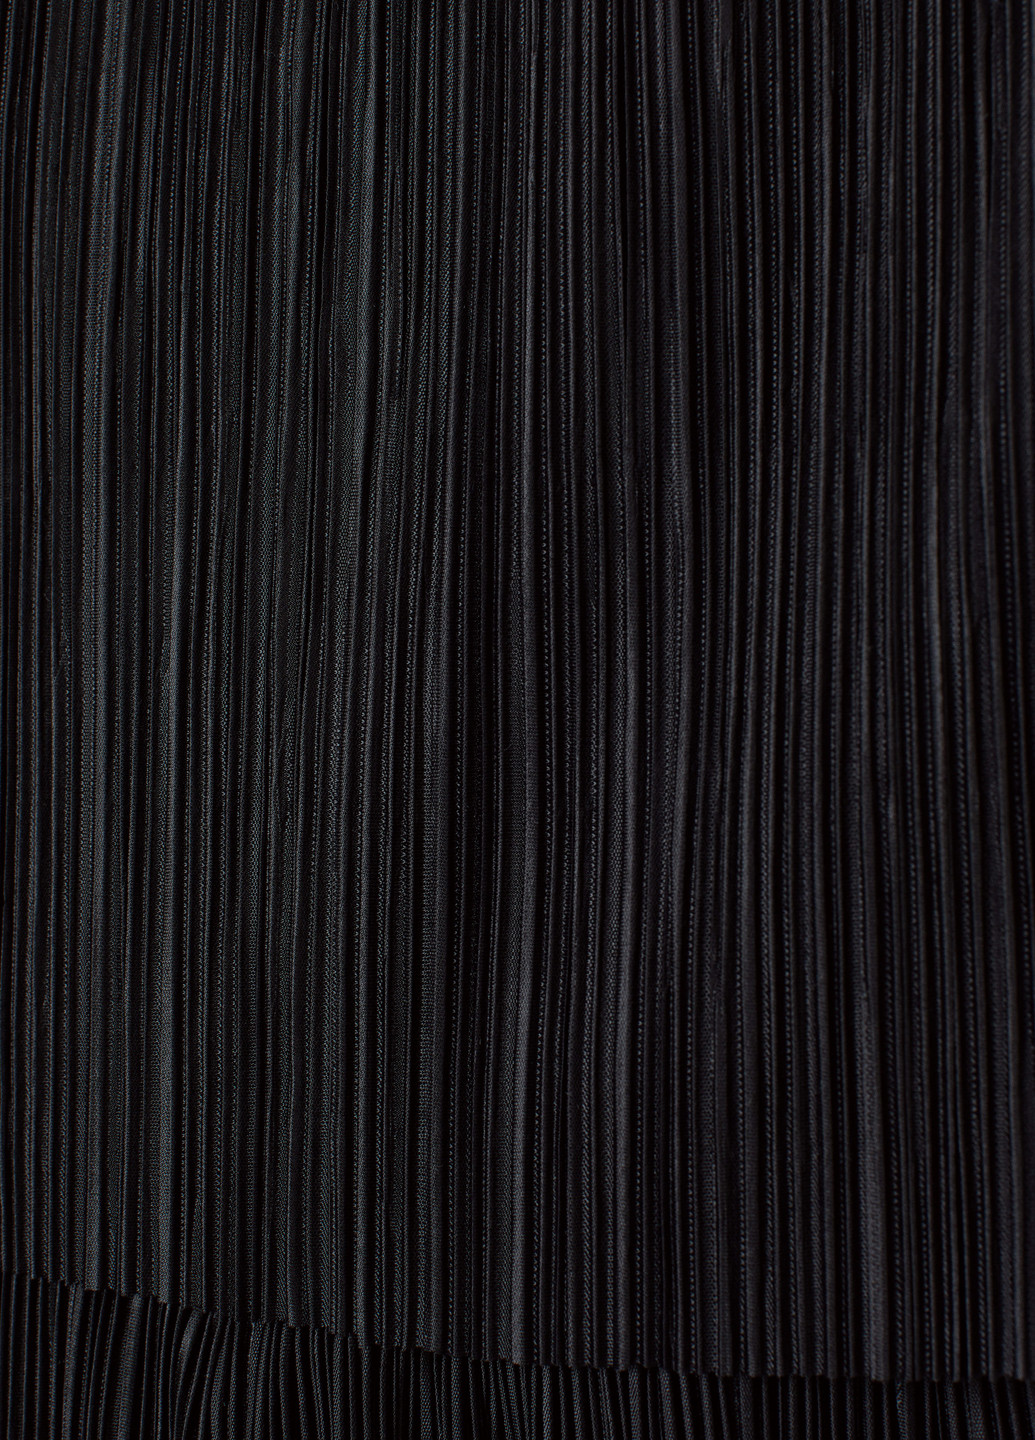 Комбинезон для кормящих H&M комбинезон-брюки однотонный чёрный кэжуал полиэстер, трикотаж